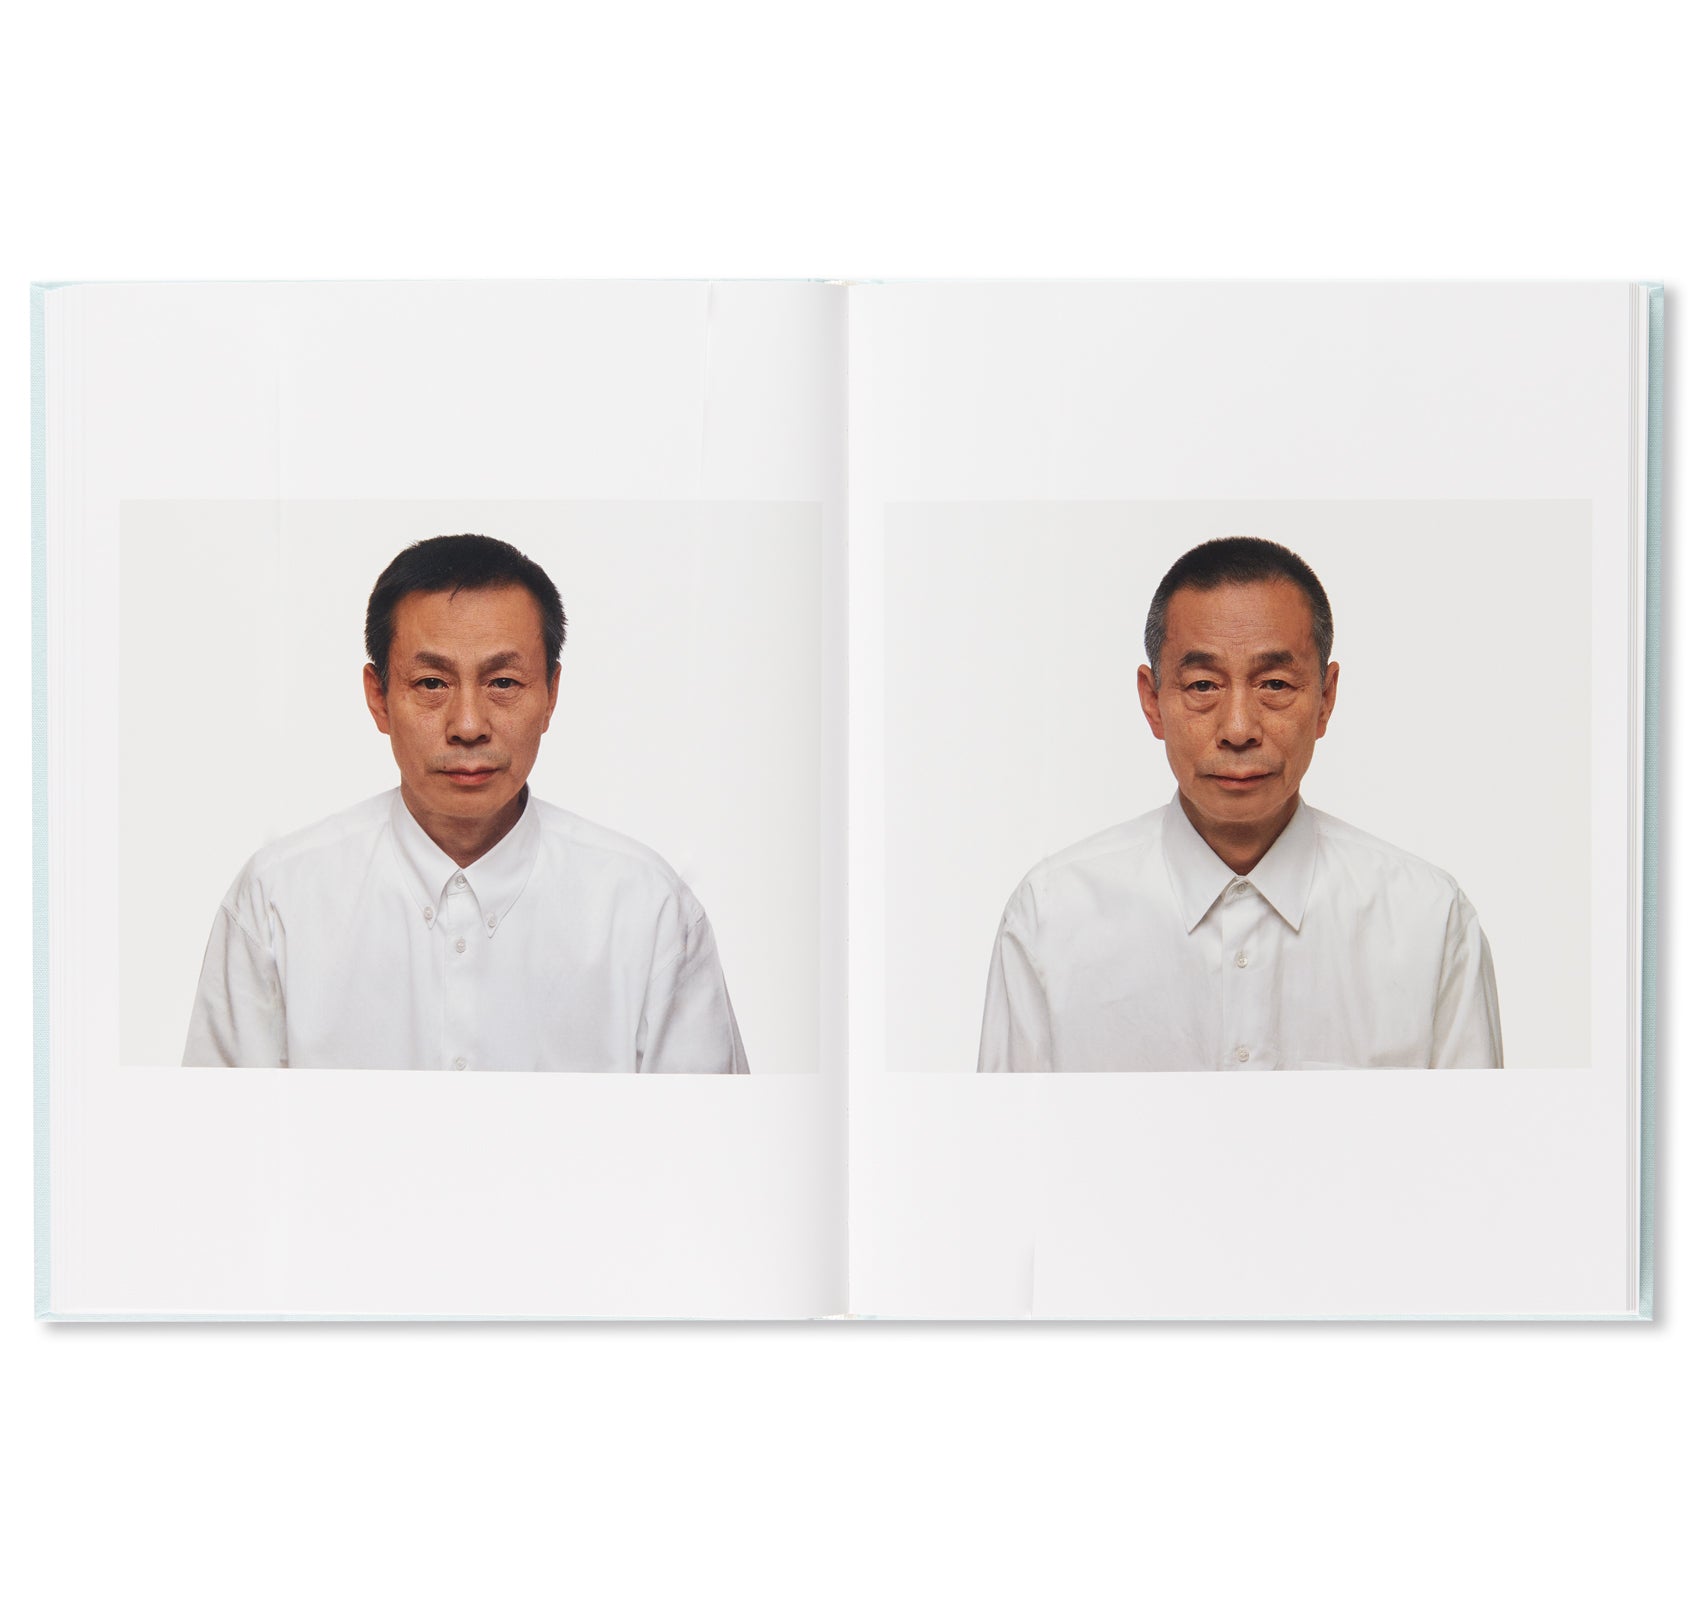 THE JOY OF PORTRAITS by Keizo Kitajima